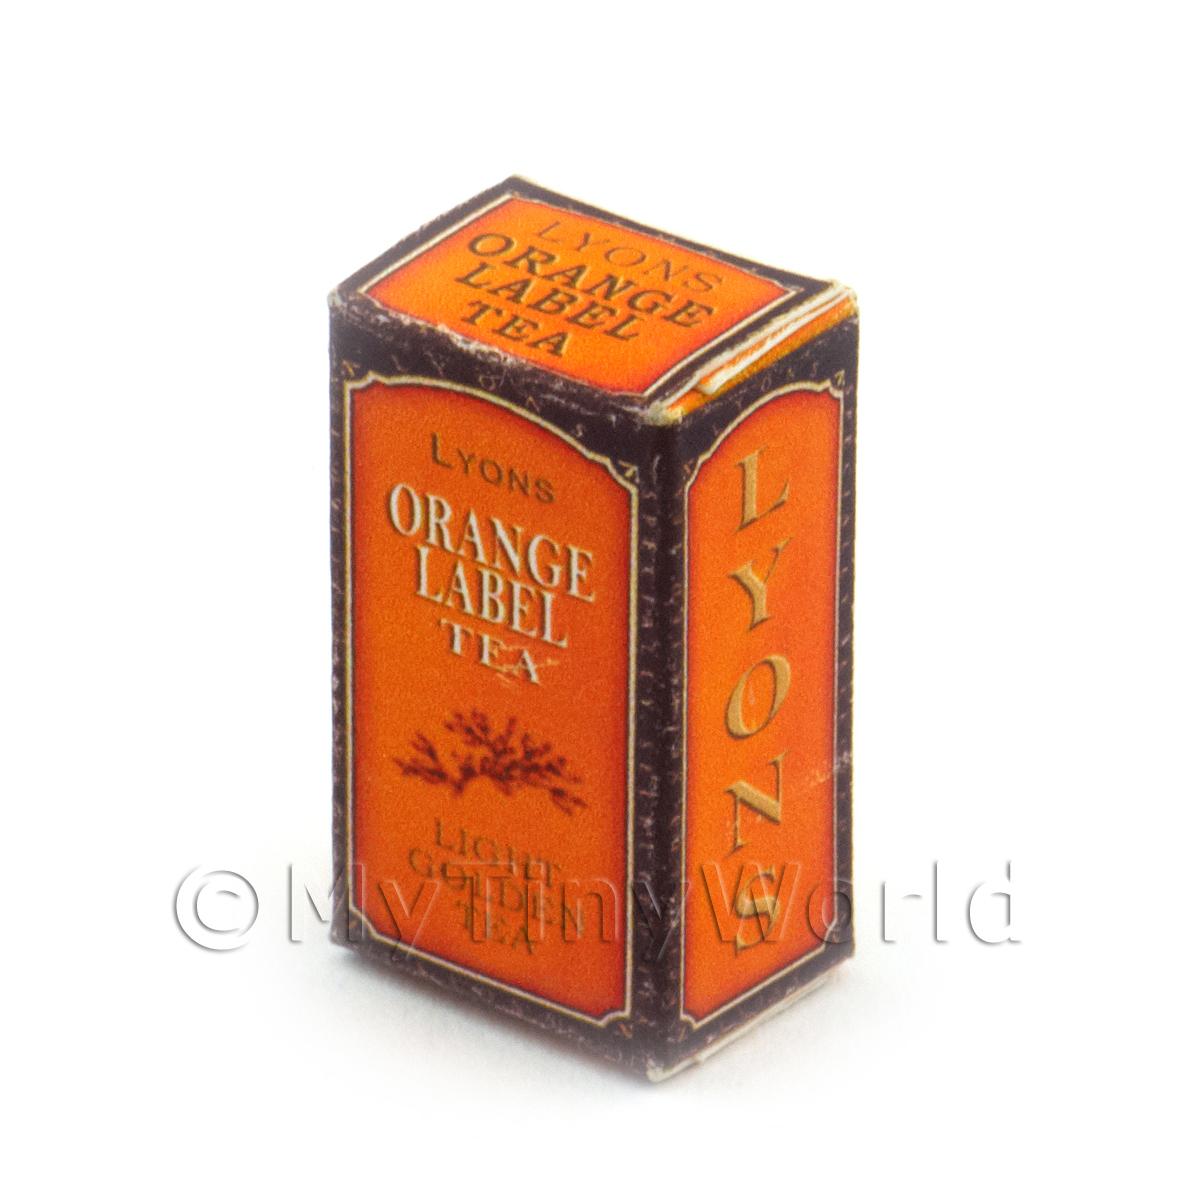 Puppenhaus Miniatur Lyons Orange Label Tee Box 